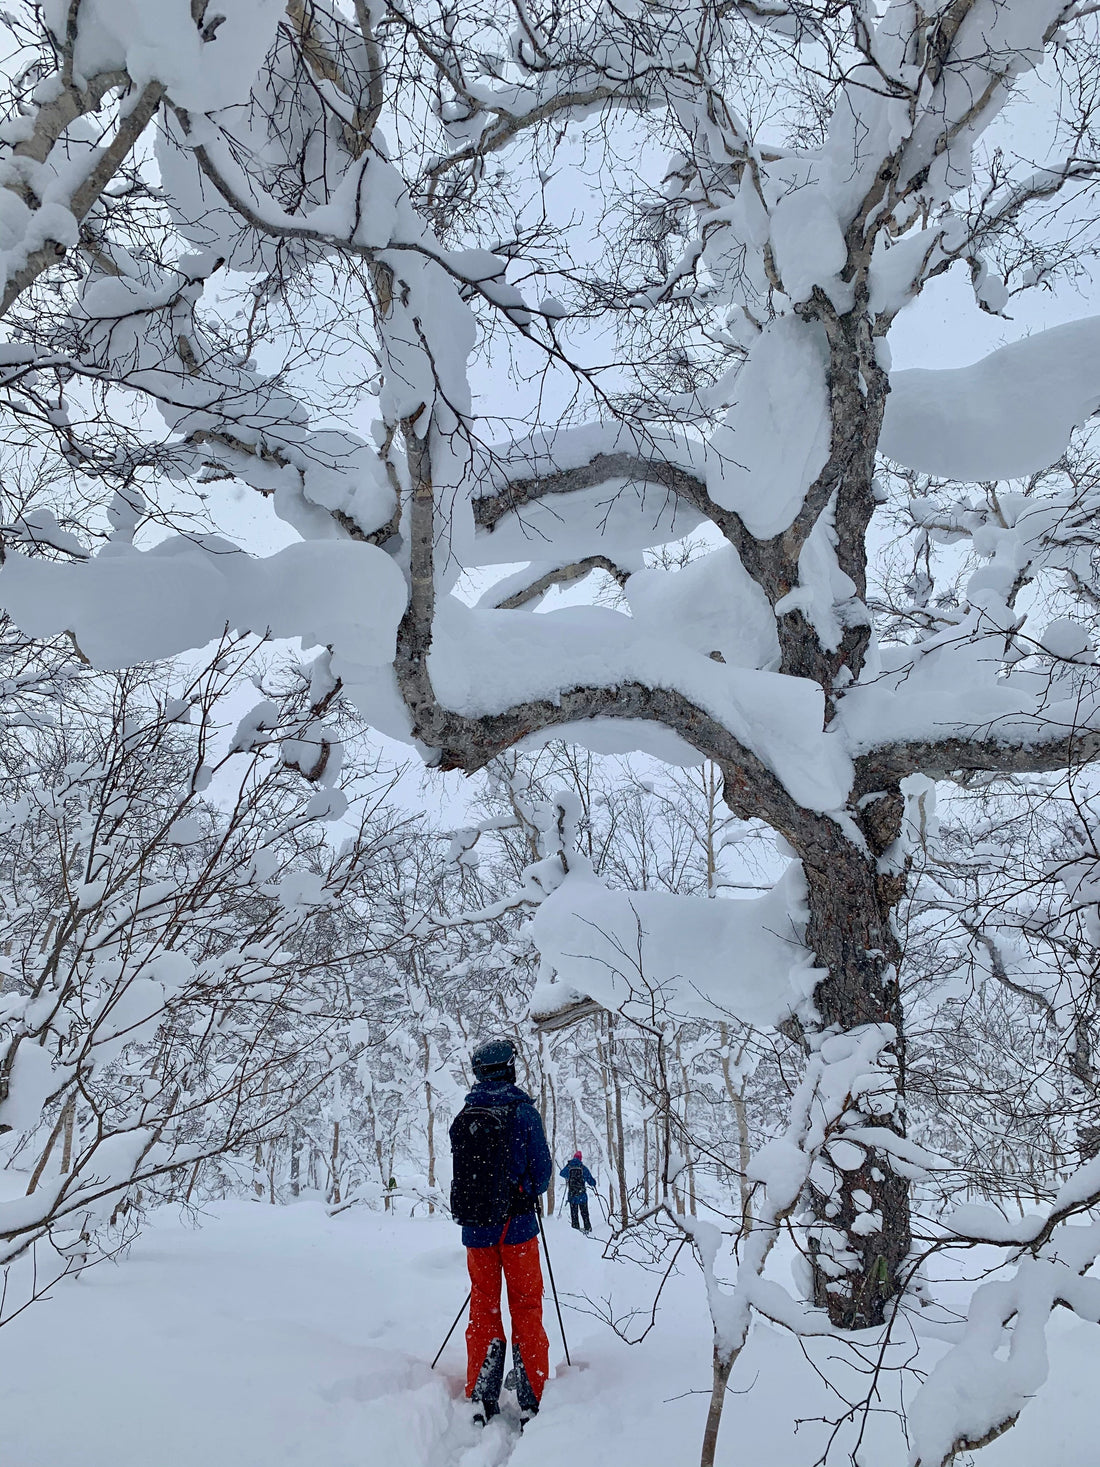 Skier walking through a snowy birch forest in Japan